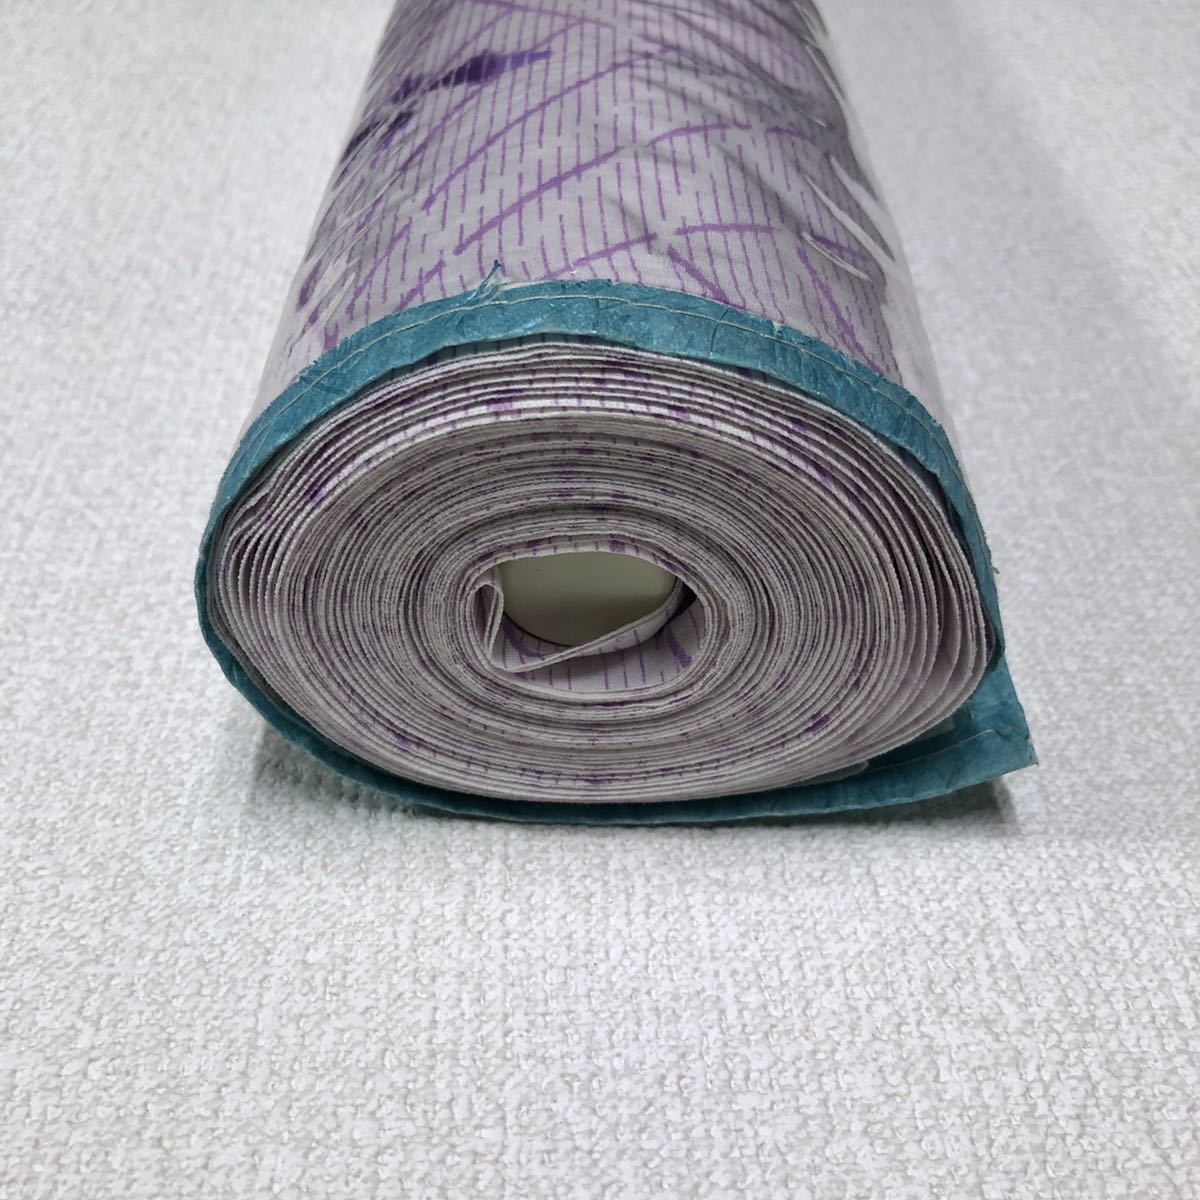 Z150 новый старый товар ткань ткань хлопок полиэстер юката .. переделка упрощенный товар 